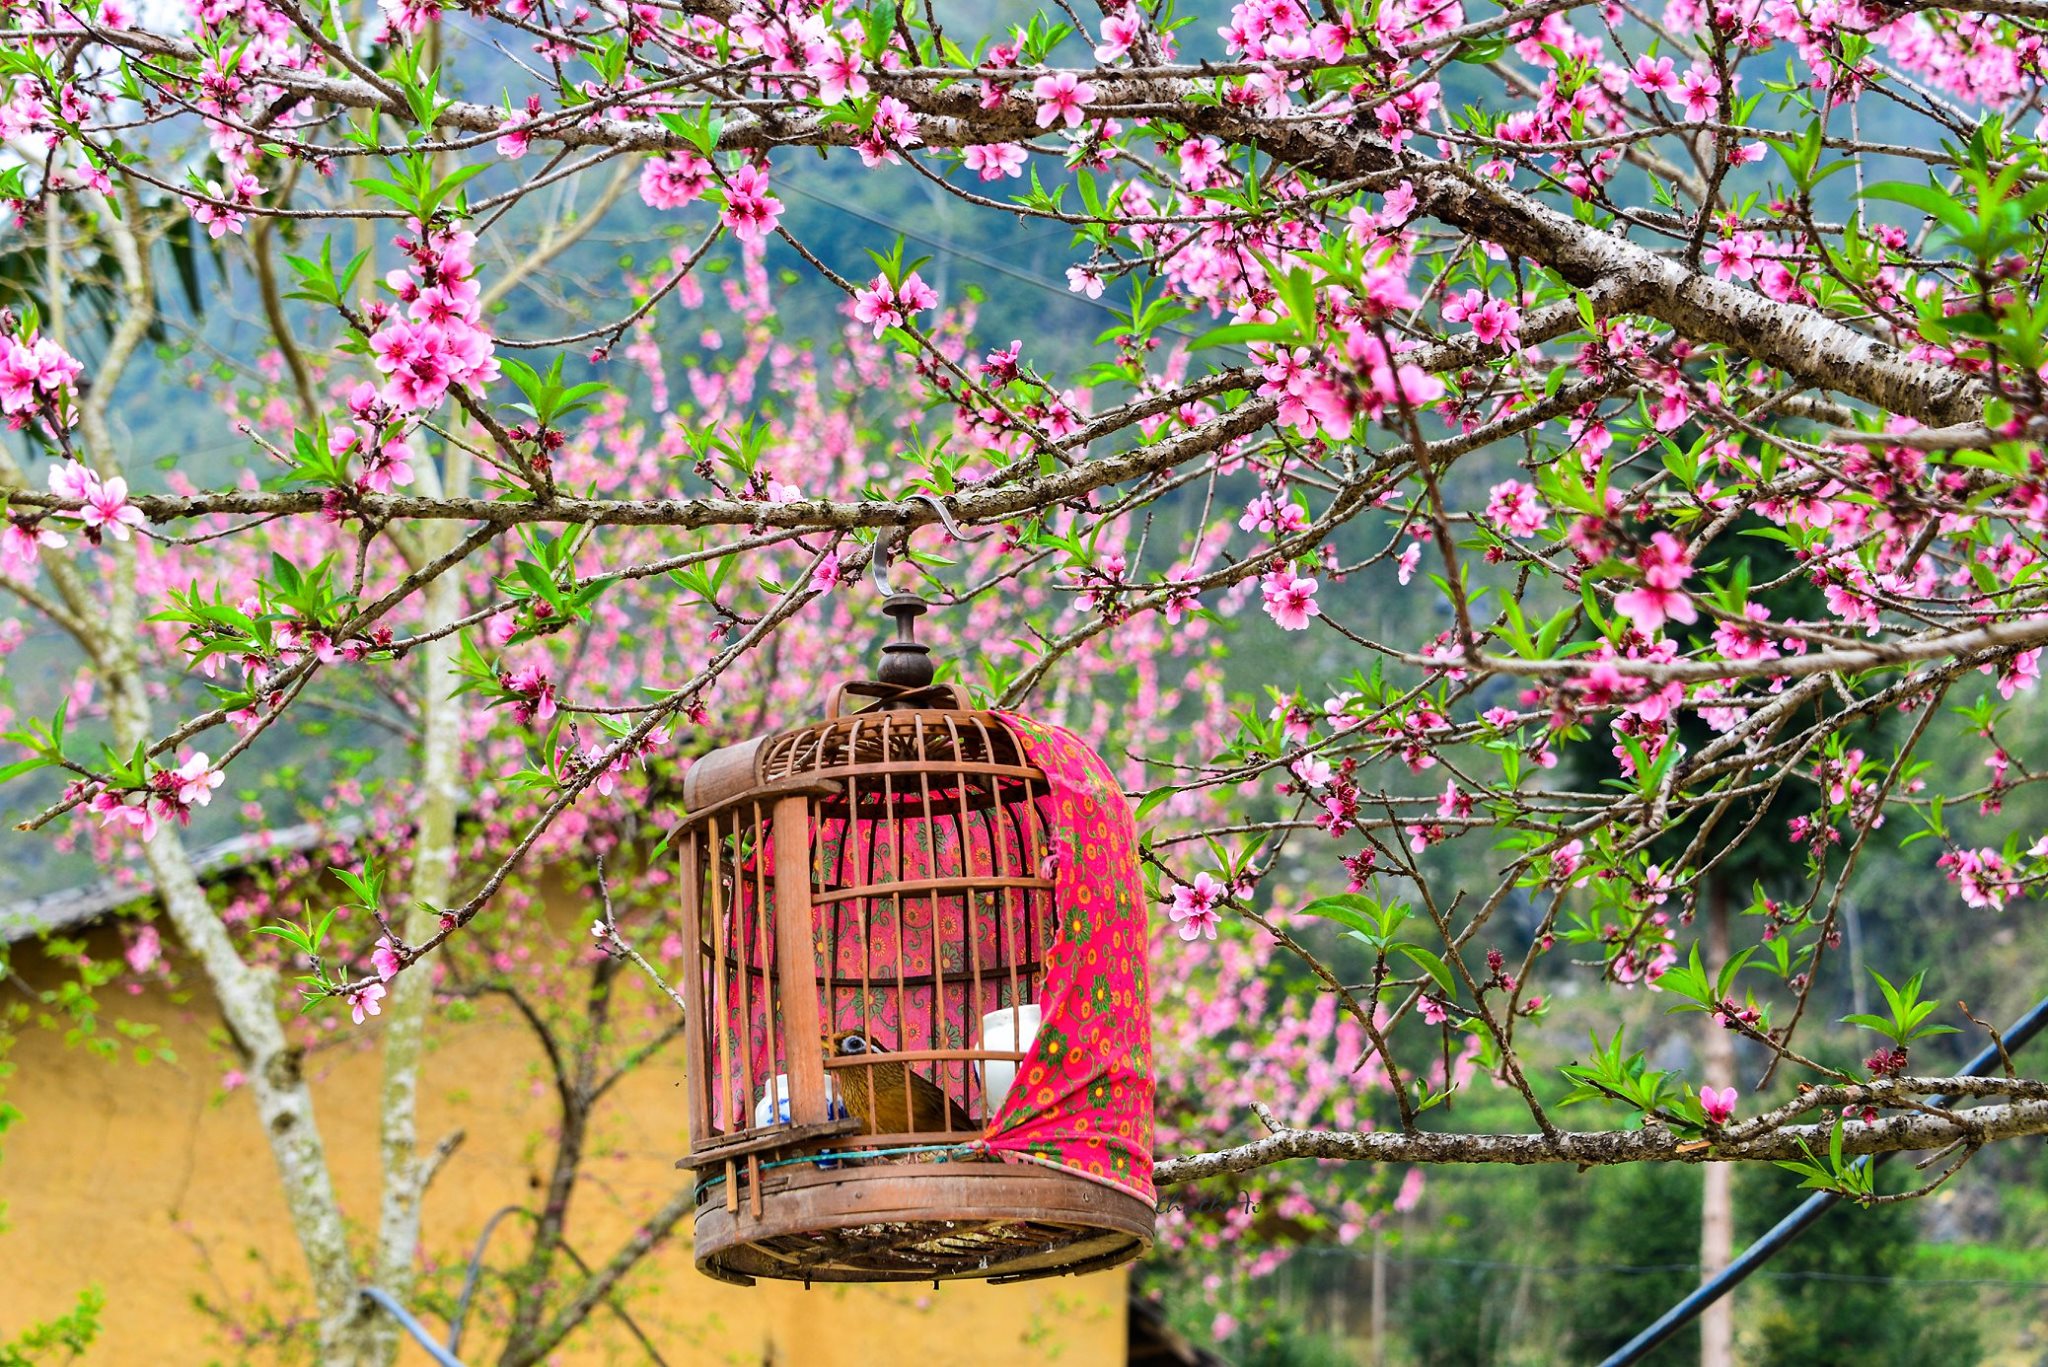 Thuê xe du lịch tận hưởng những mùa hoa đẹp nhất Hà Giang